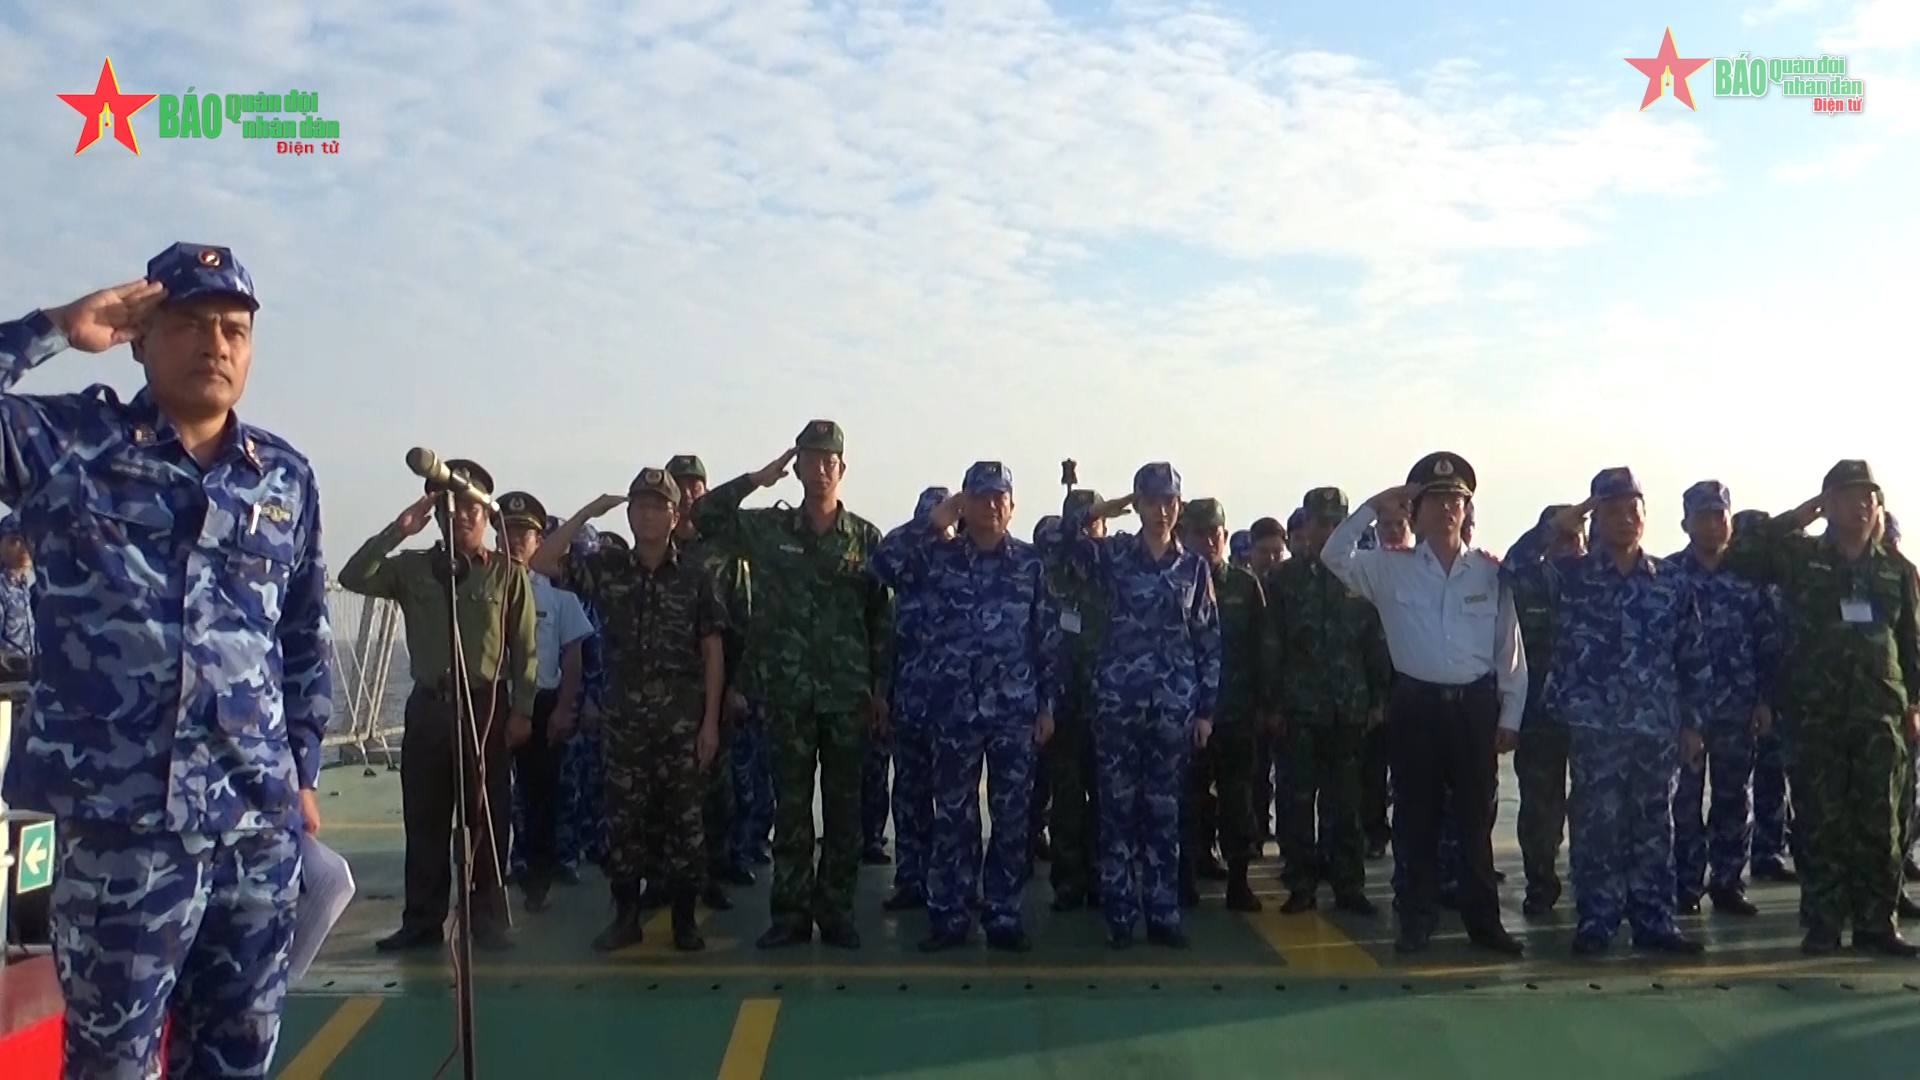 Cảnh sát biển Việt Trung: Hãy cùng chiêm ngưỡng những hình ảnh về đội Cảnh sát biển Việt Trung nghiêm túc và tận tâm trong việc bảo vệ biển đảo. Đây là một việc làm rất ý nghĩa và bảo đảm an toàn cho đất nước.